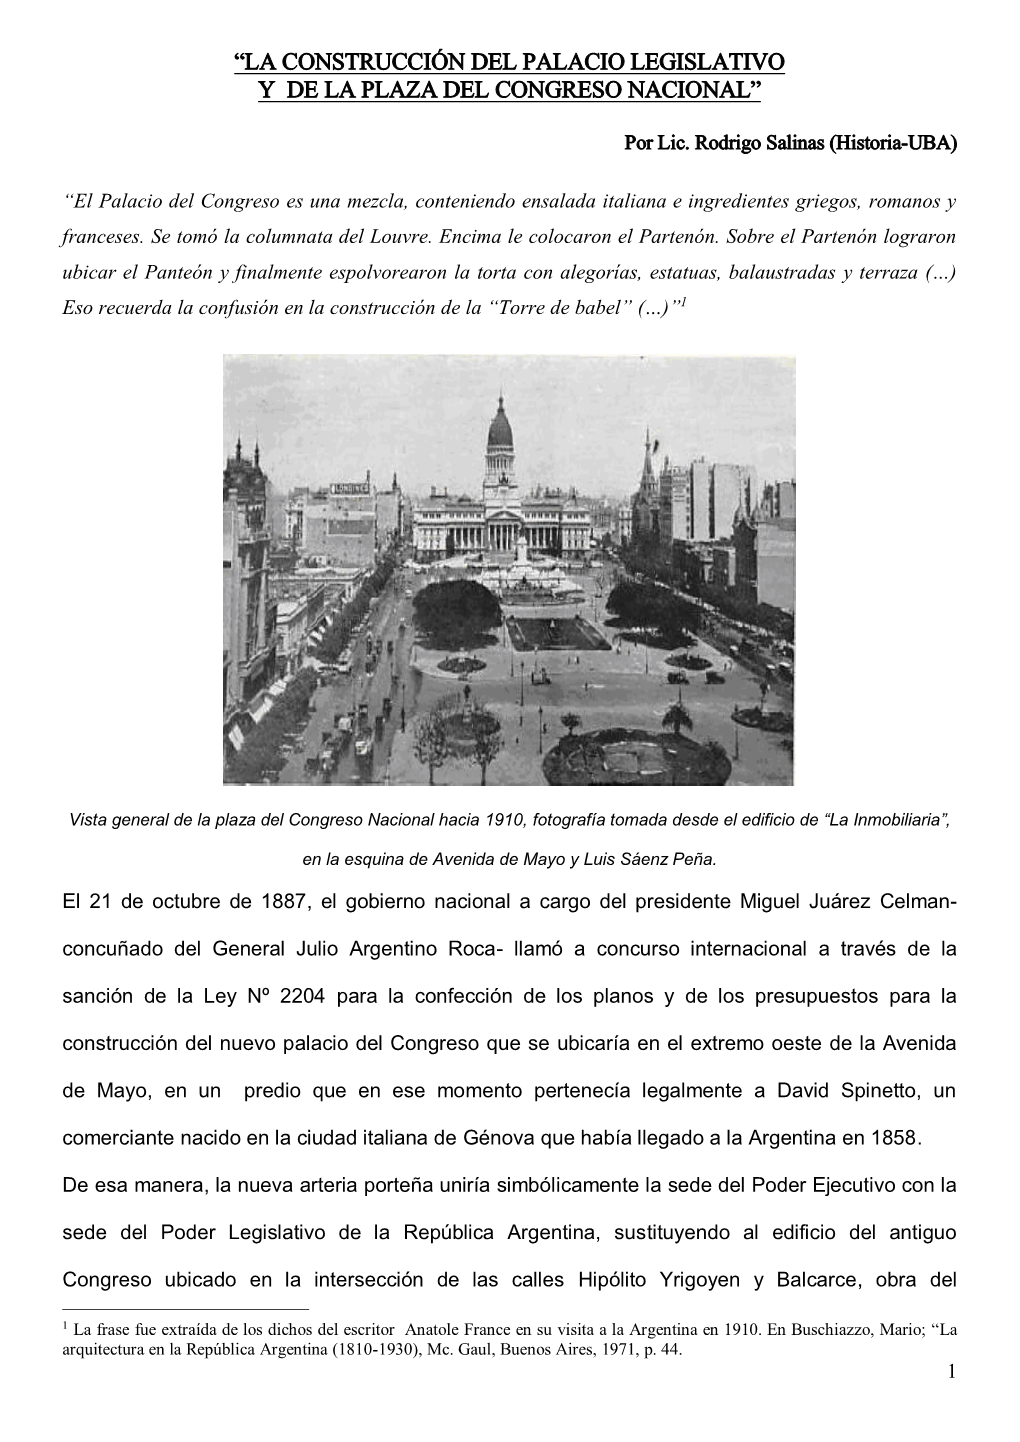 La Construcción Del Palacio Legislativo Y De La Plaza Del Congreso Nacional”